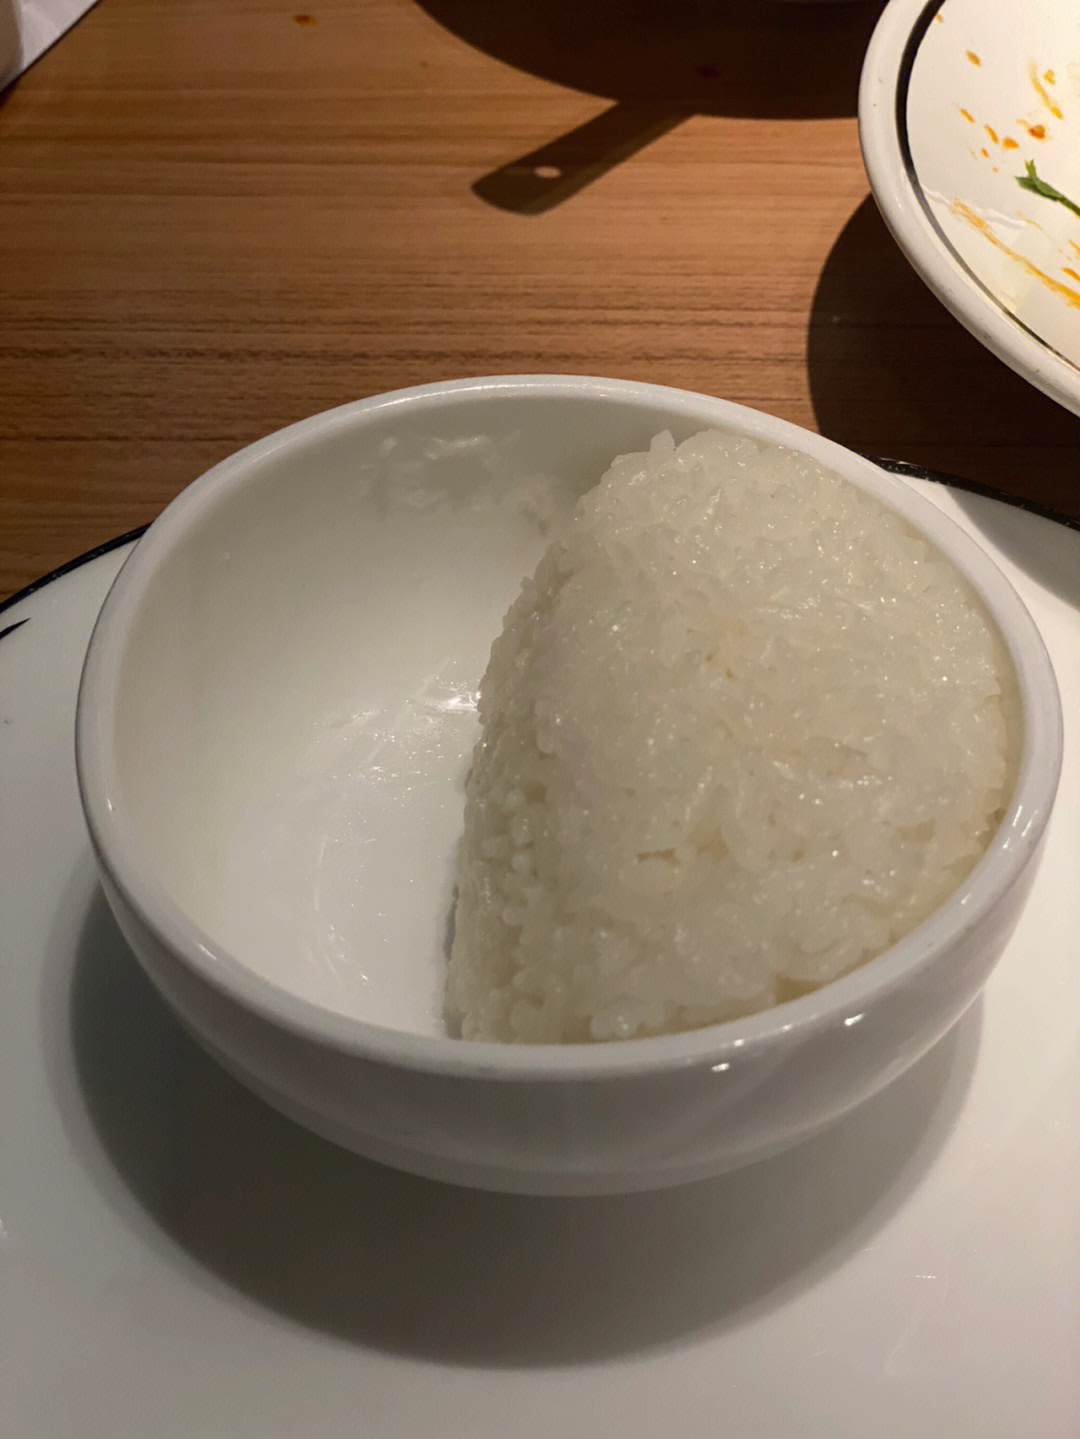 昨天和朋友去吃酸菜鱼,因为不打算摄入过多主食,所以本打算不点米饭